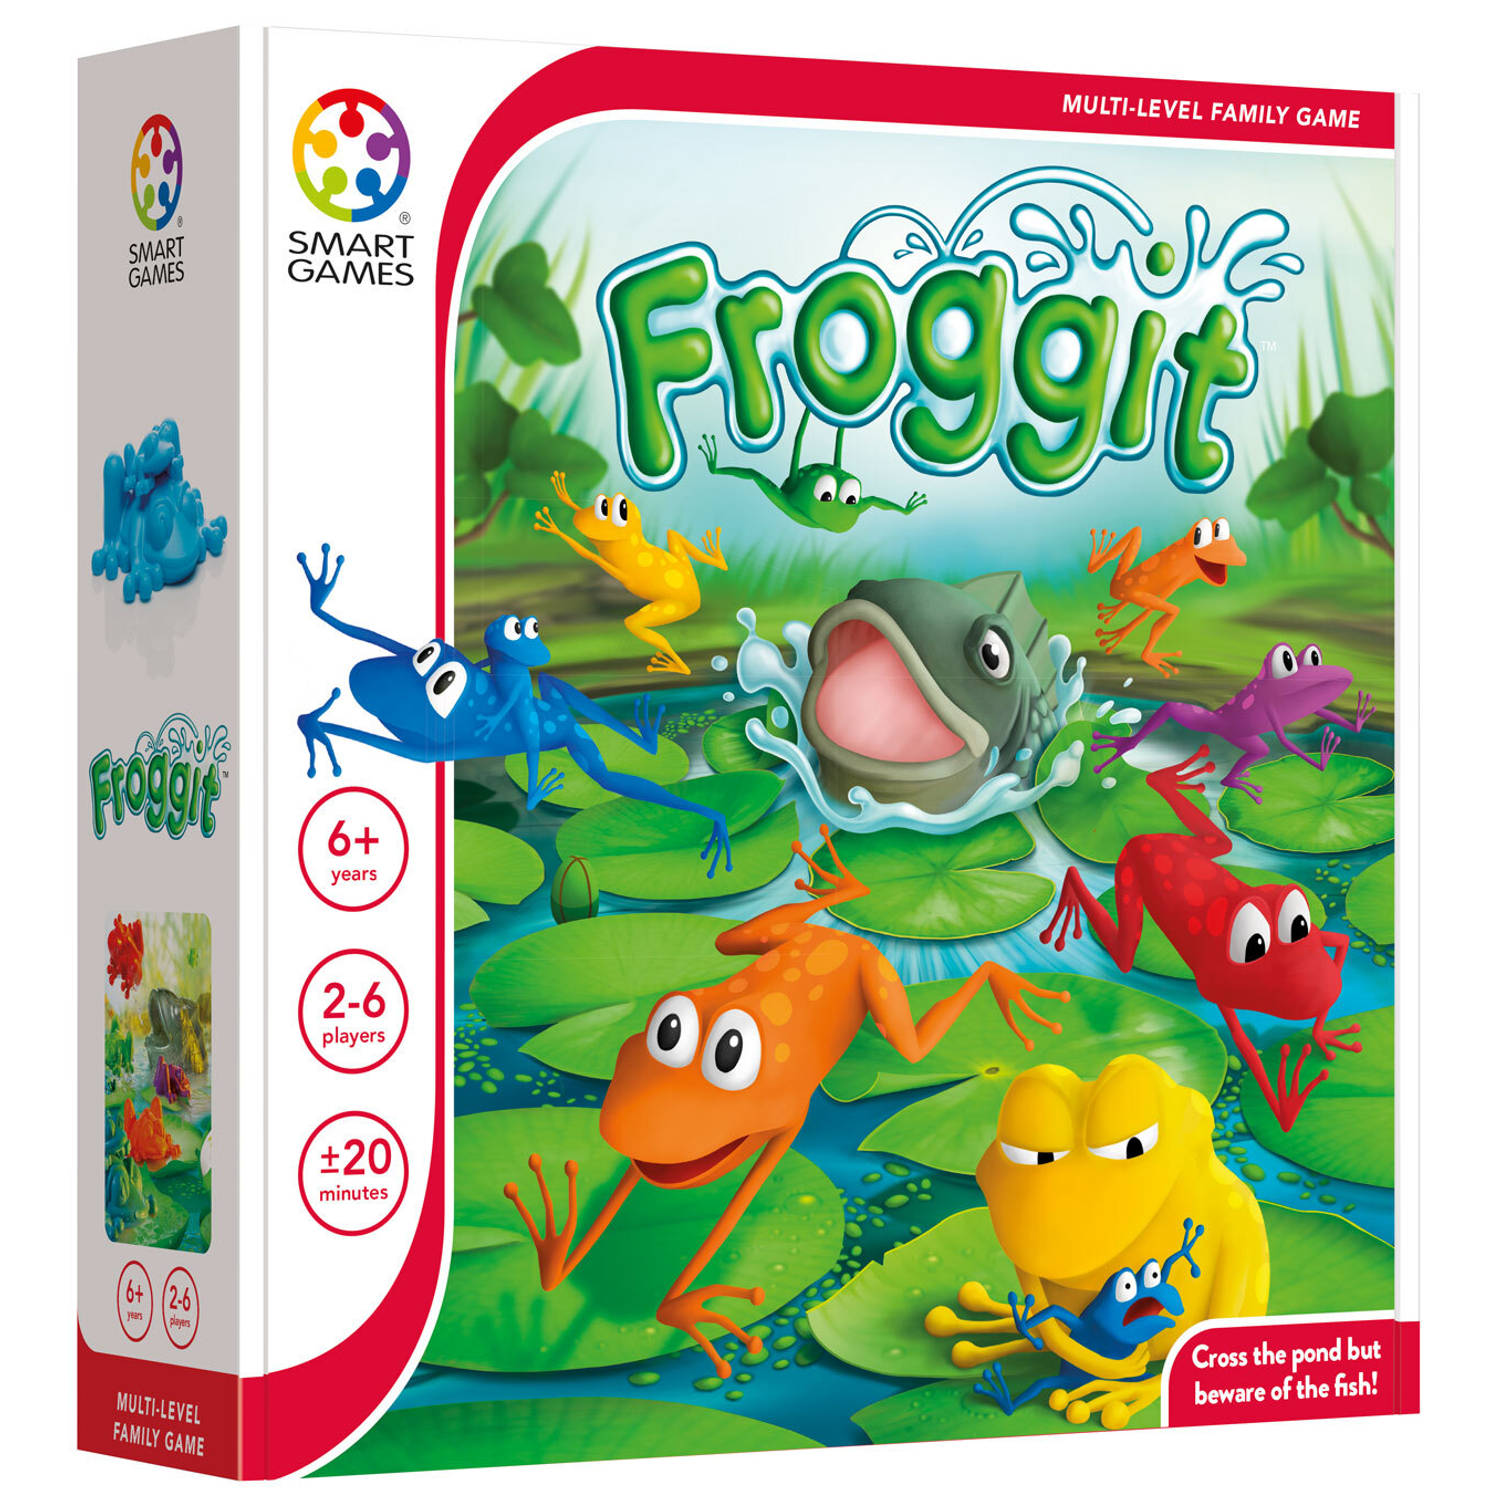 Smart Games Smart games Froggit